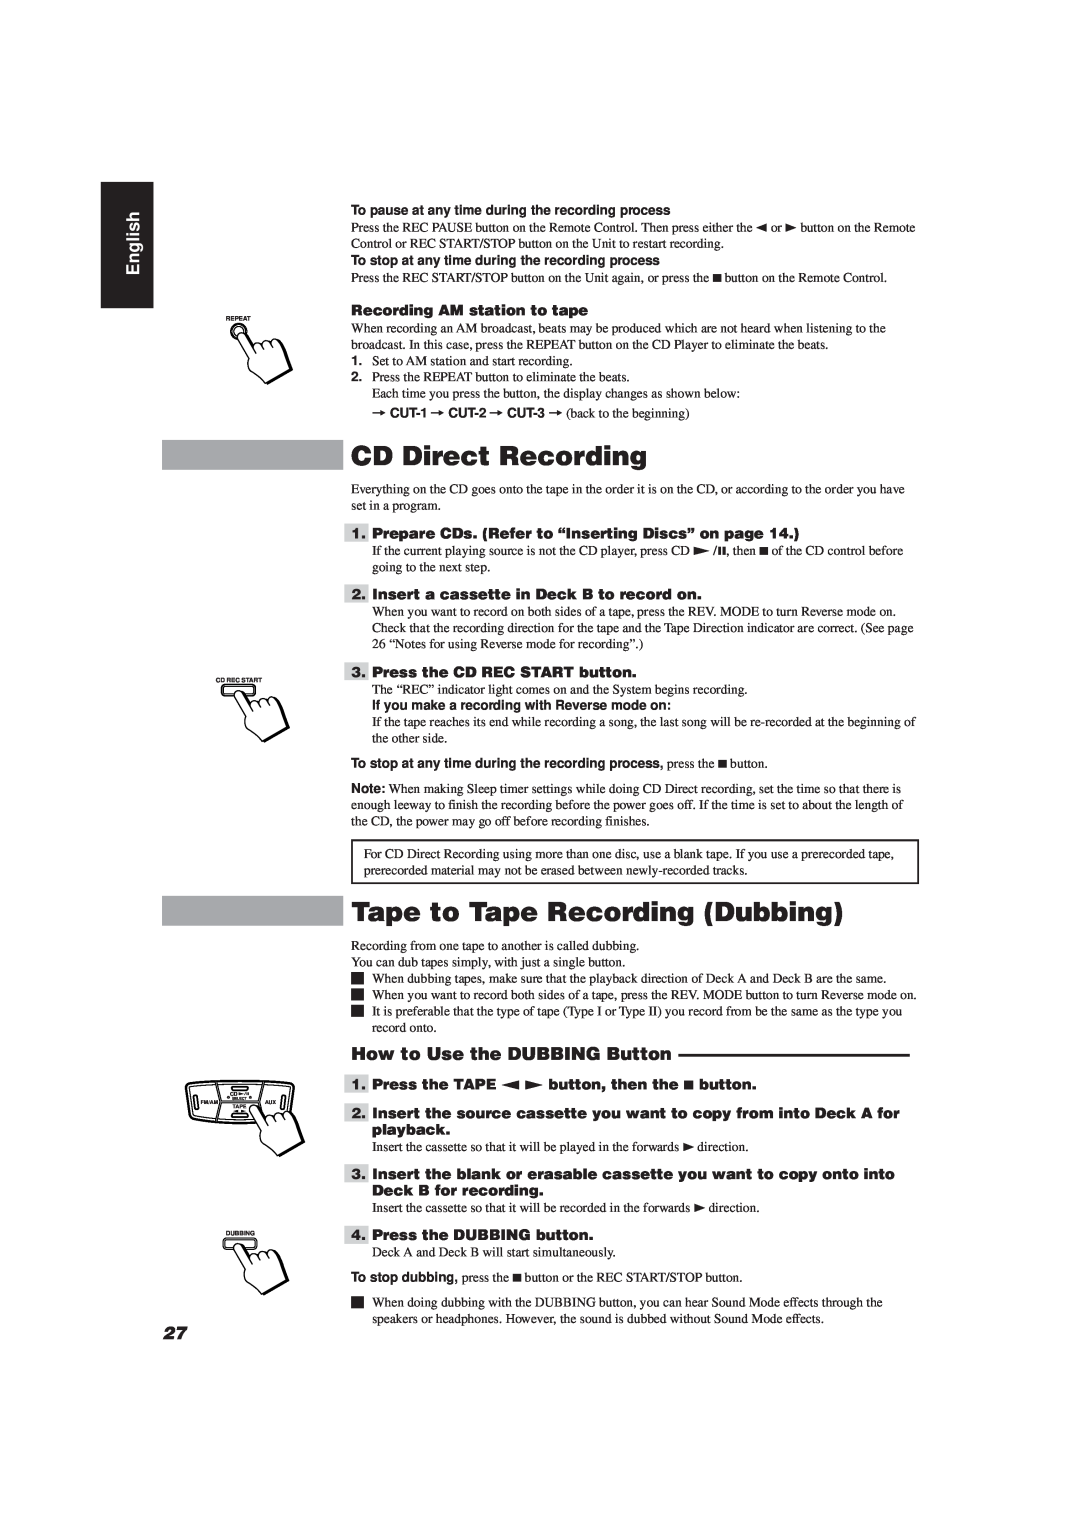 JVC MX-J111V manual CD Direct Recording, Tape to Tape Recording Dubbing, How to Use the DUBBING Button, English 